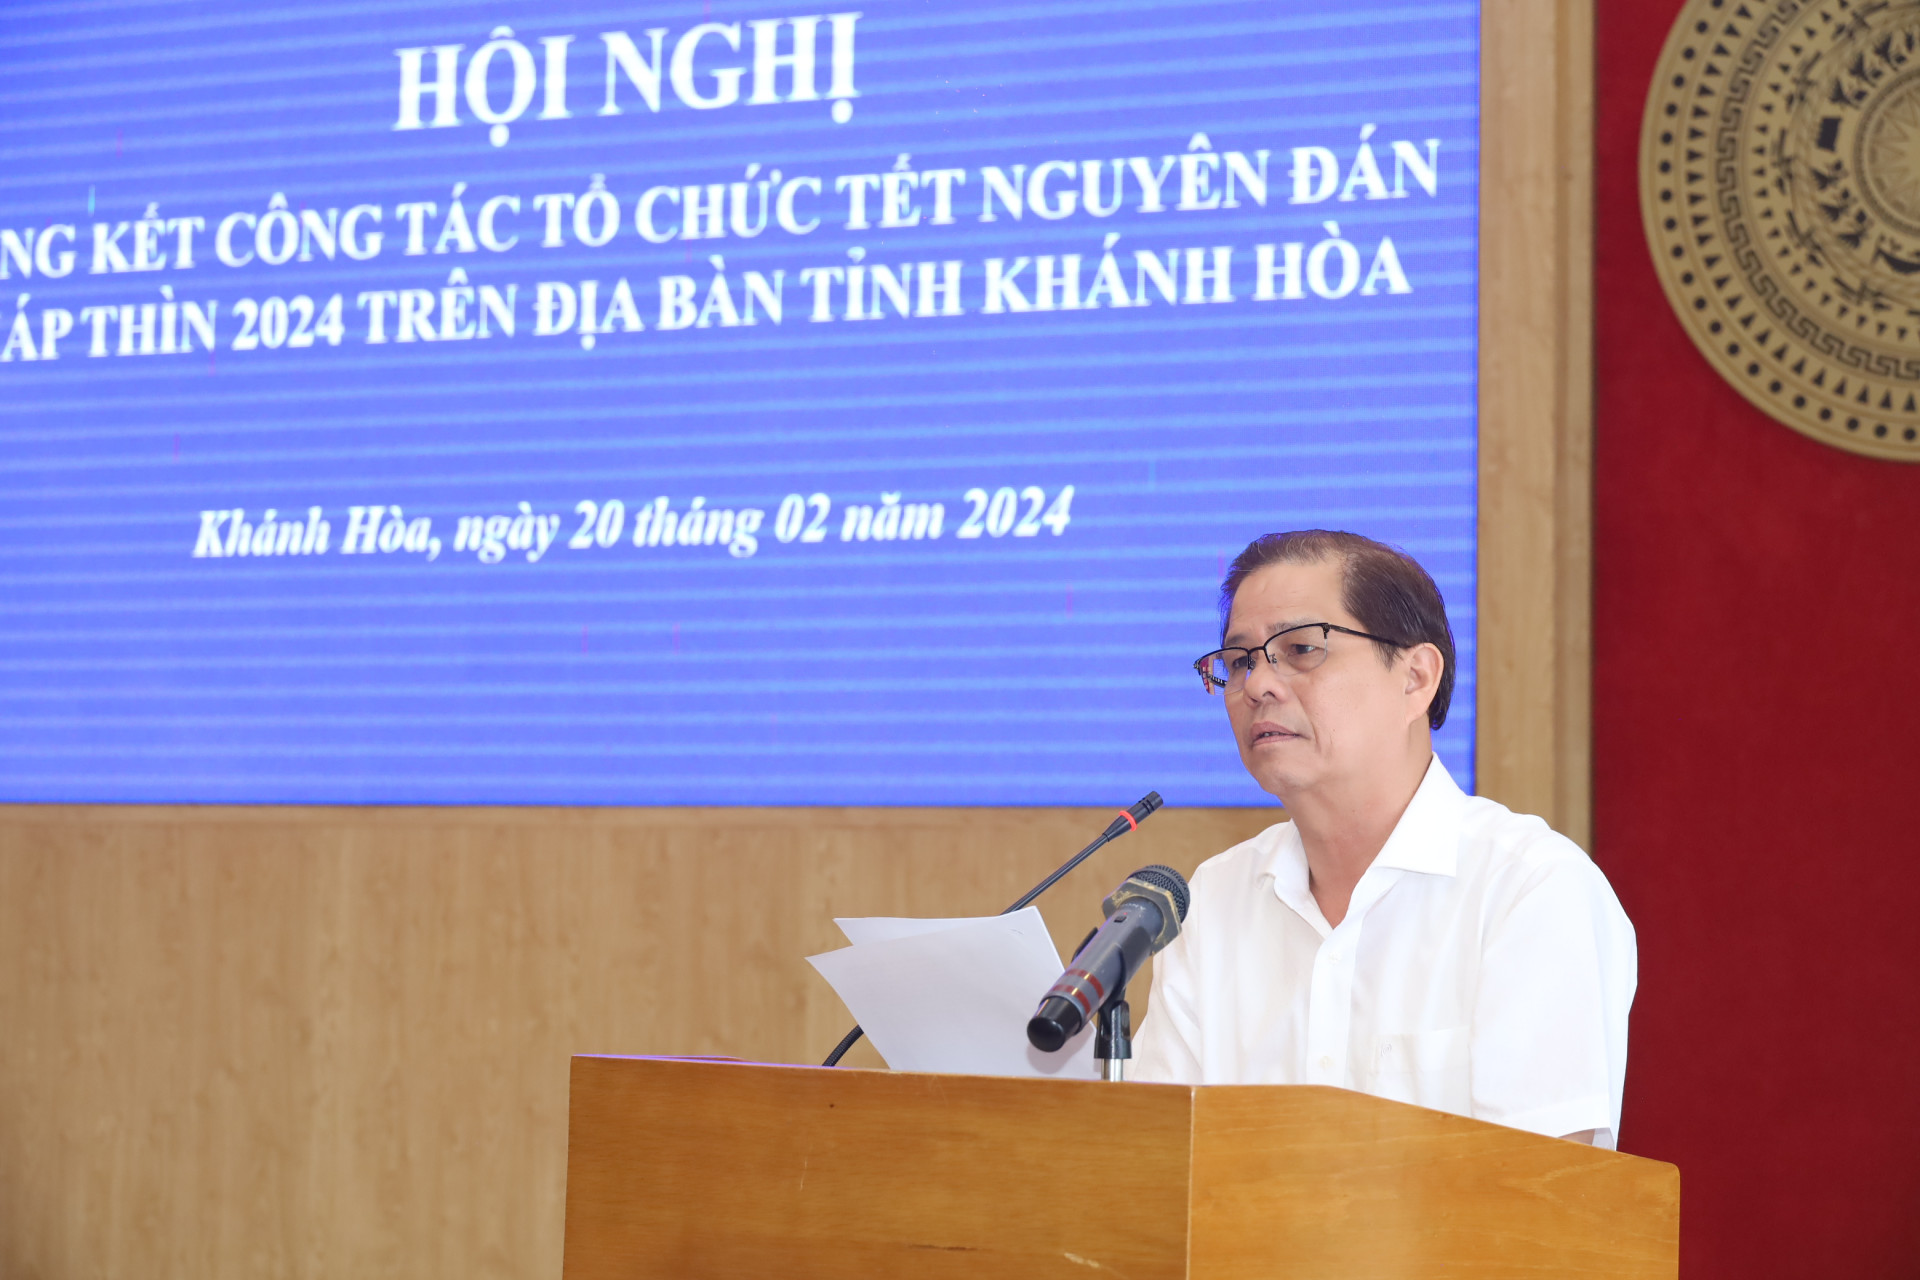 Ông Nguyễn Tấn Tuân phát biểu kết luận hội nghị.